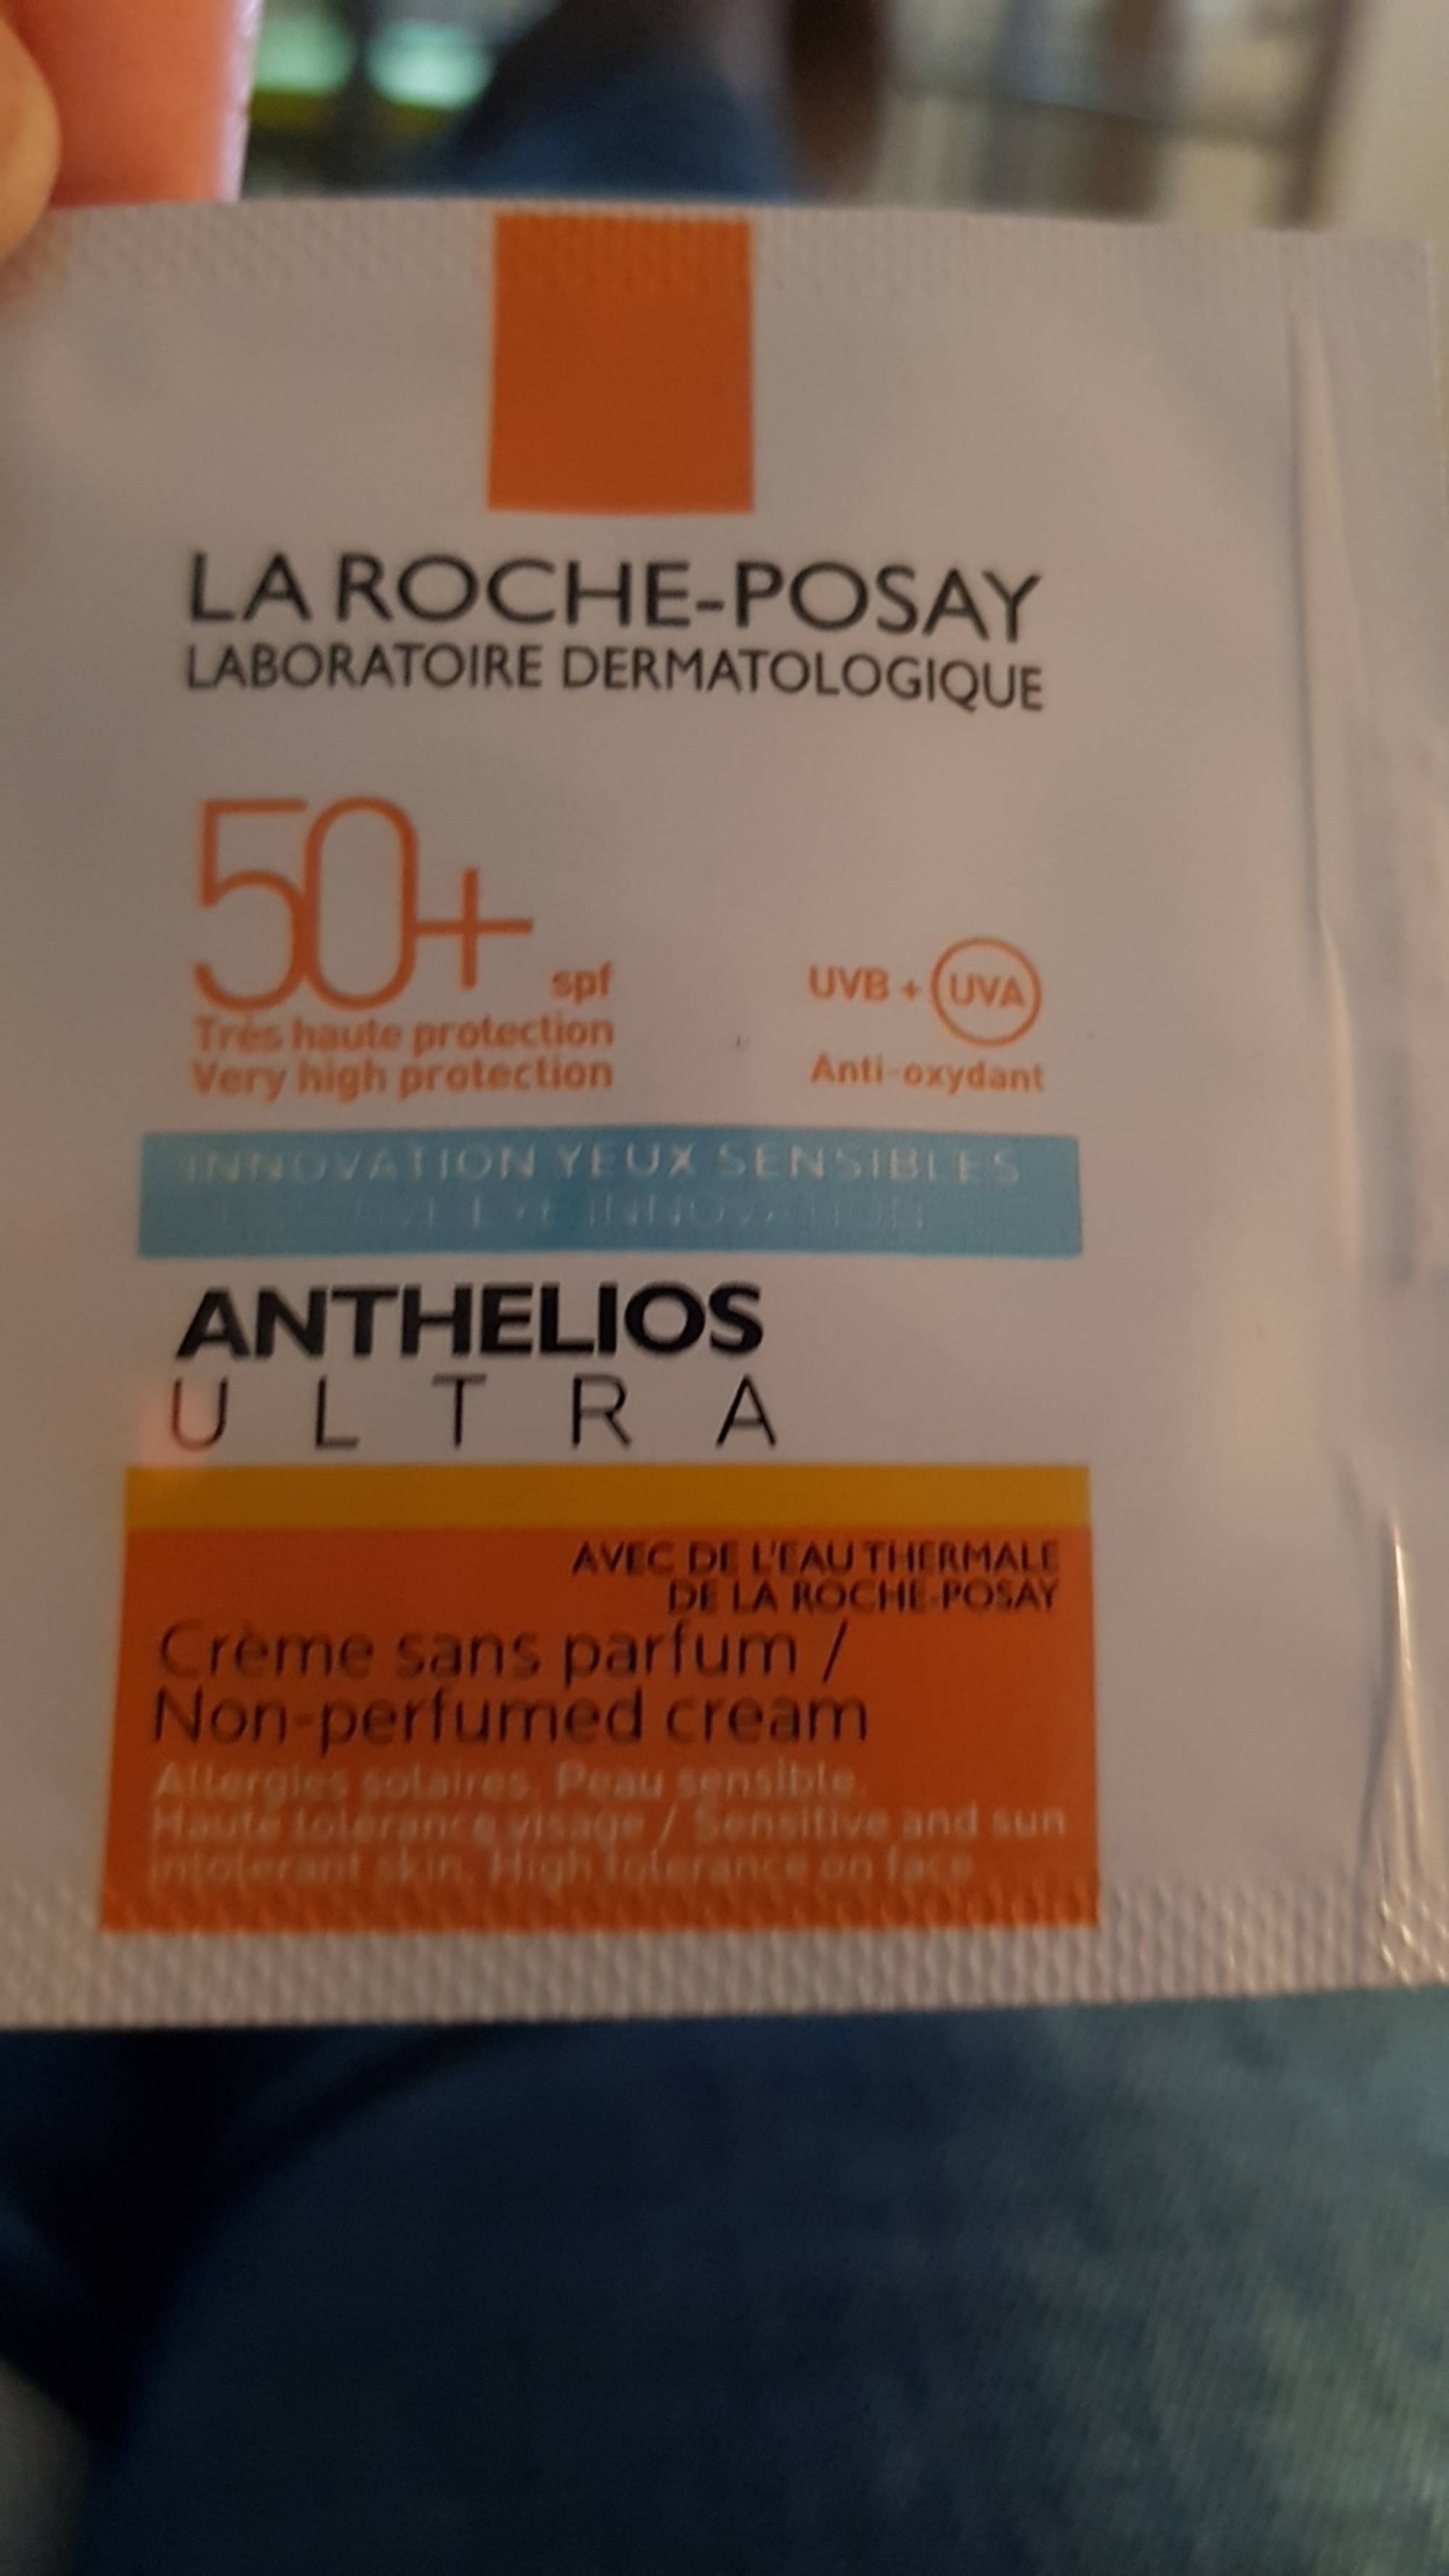 LA ROCHE-POSAY - Anthelios ultra - Crème solaire sans parfum SPF 50+